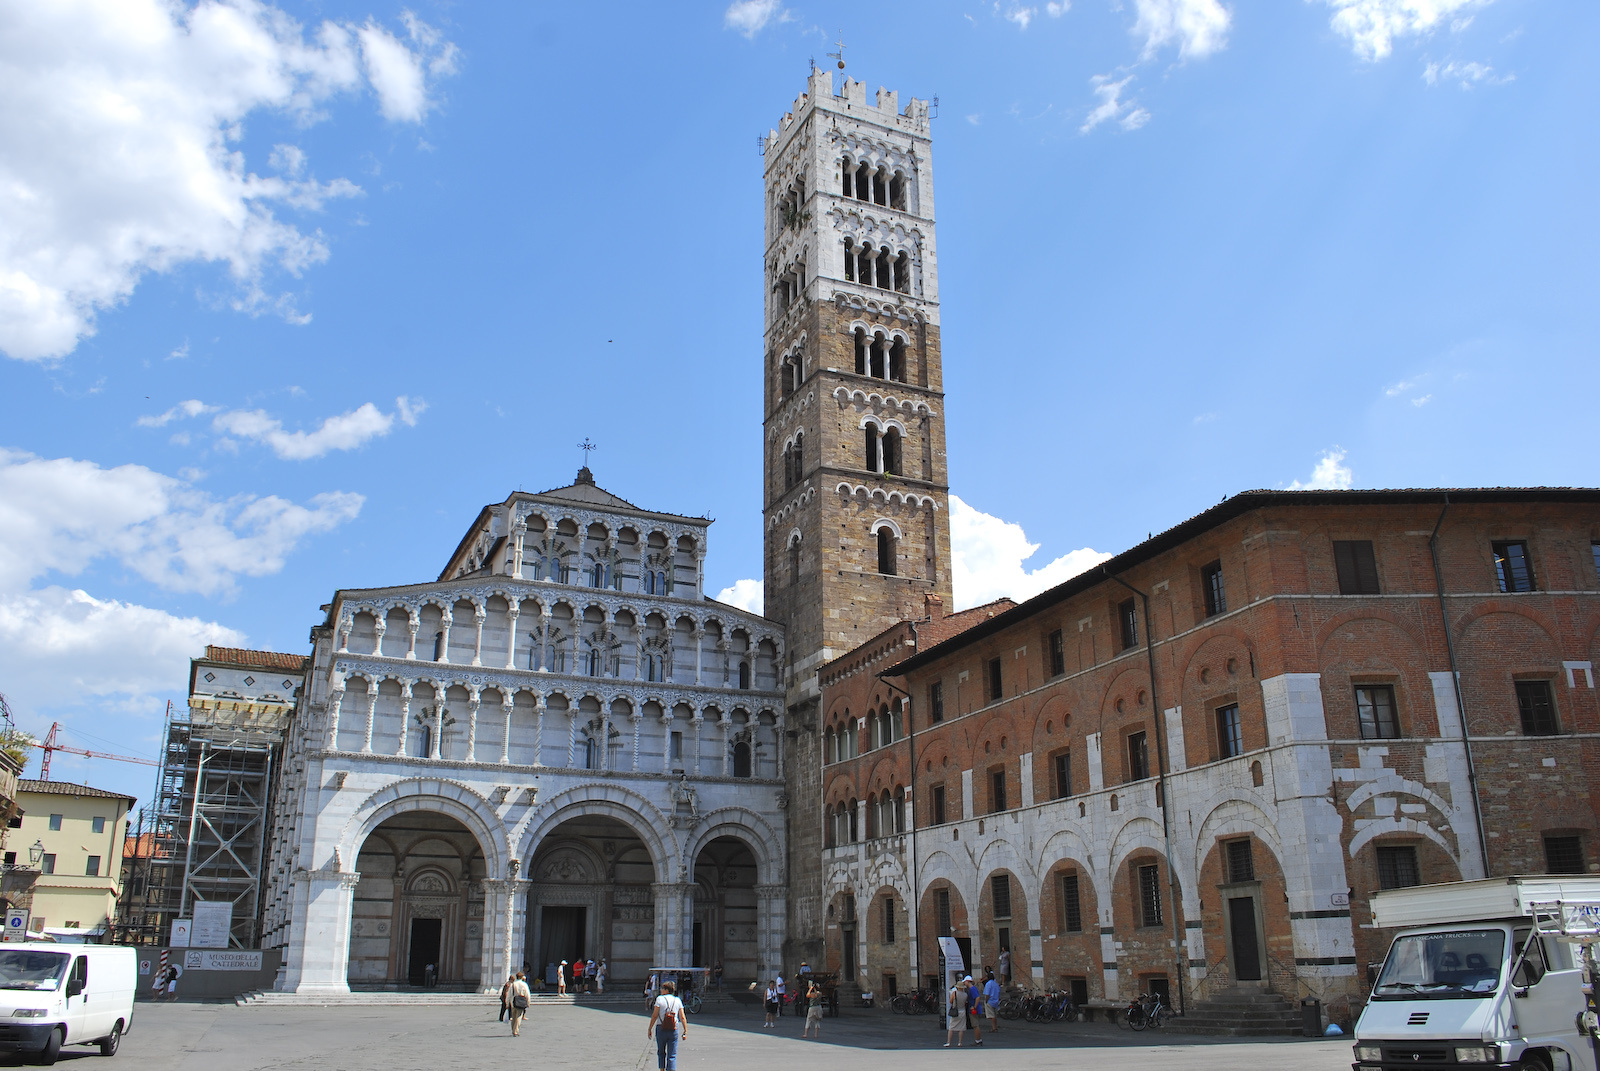 DSC 2038 Luccai katedrális  -